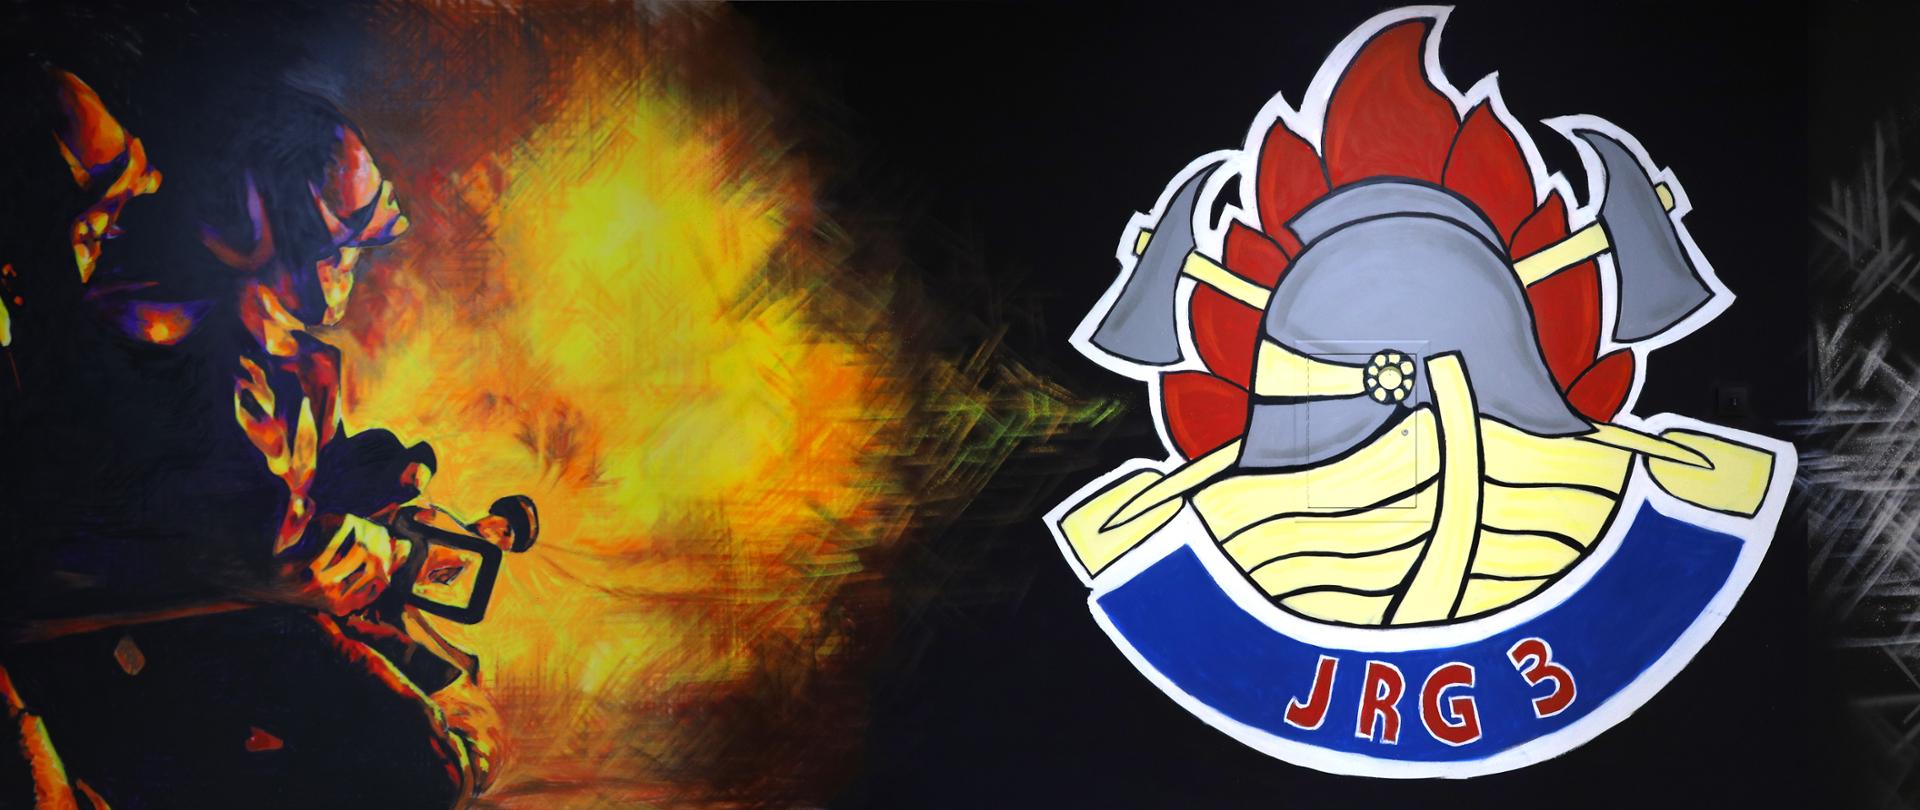 na zdjęciu grafiki po lewej dwóch strażaków gaszących ogień na środku strażackie logo z napisem JRG-3 po prawej kłęby dymu oraz głowa strażaka w masce i żółtym hełmie